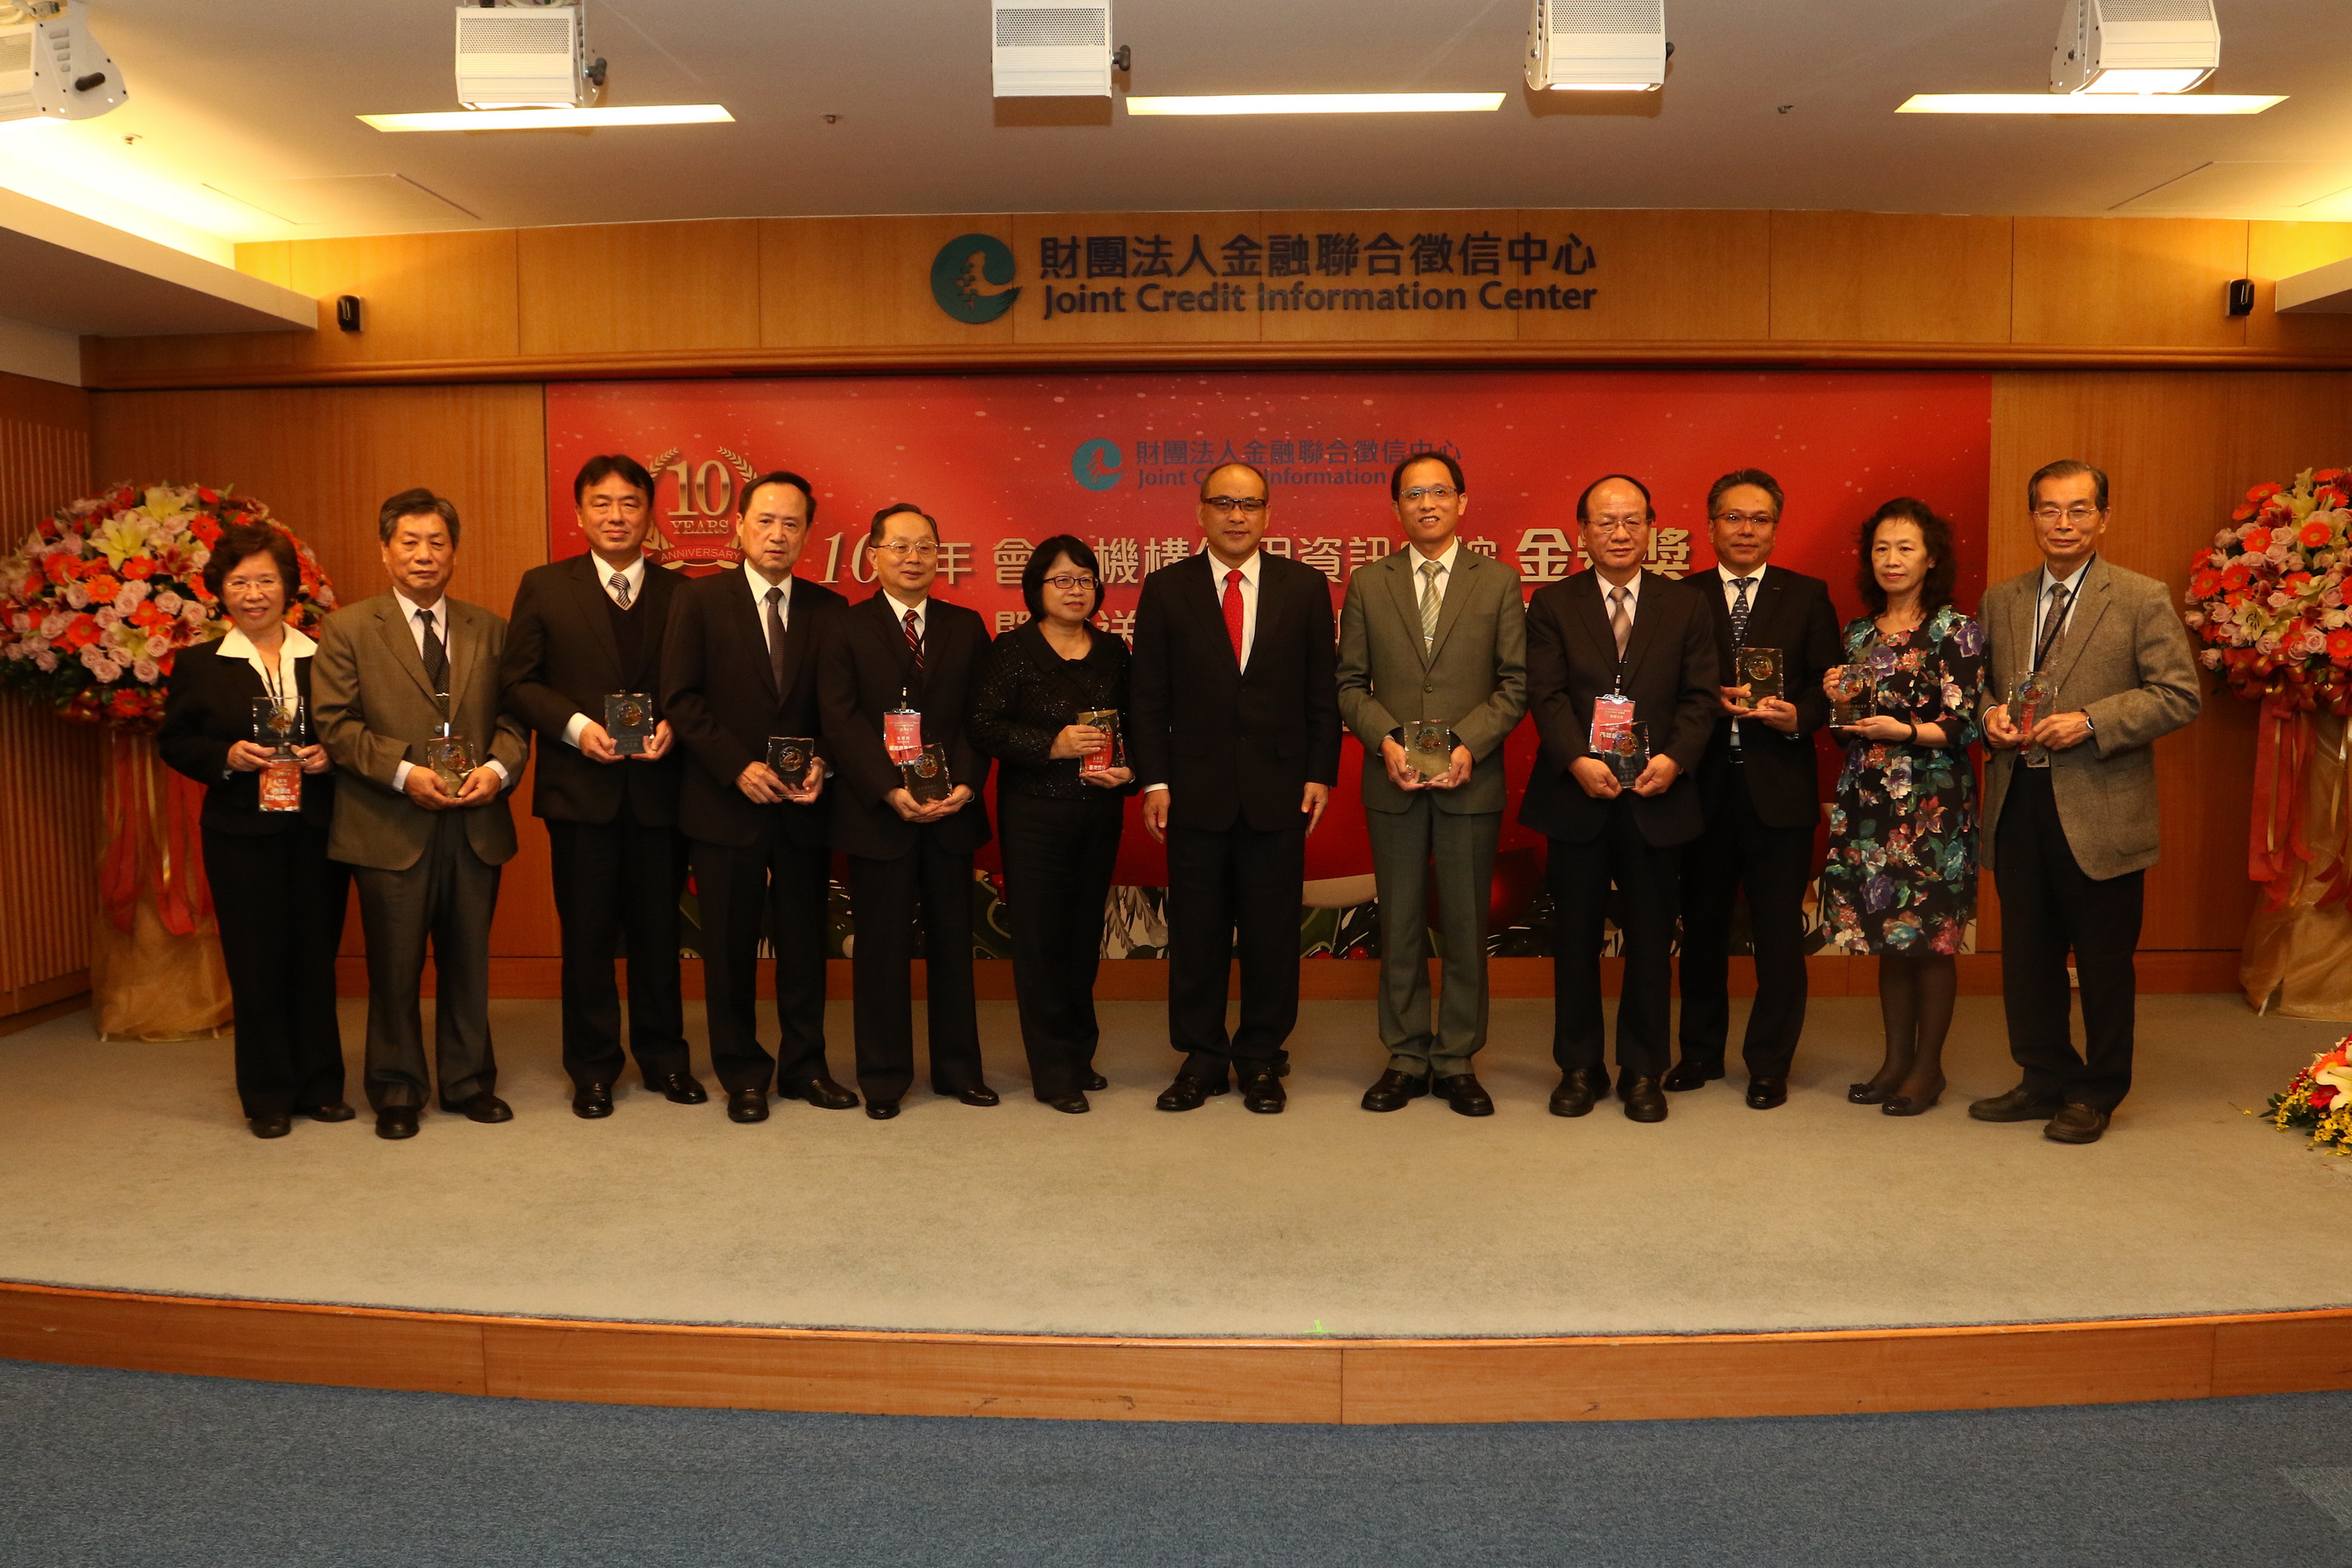 金管會鄭副主任委員貞茂(左七)與11家金質獎(授信資料類)得獎機構代表合影